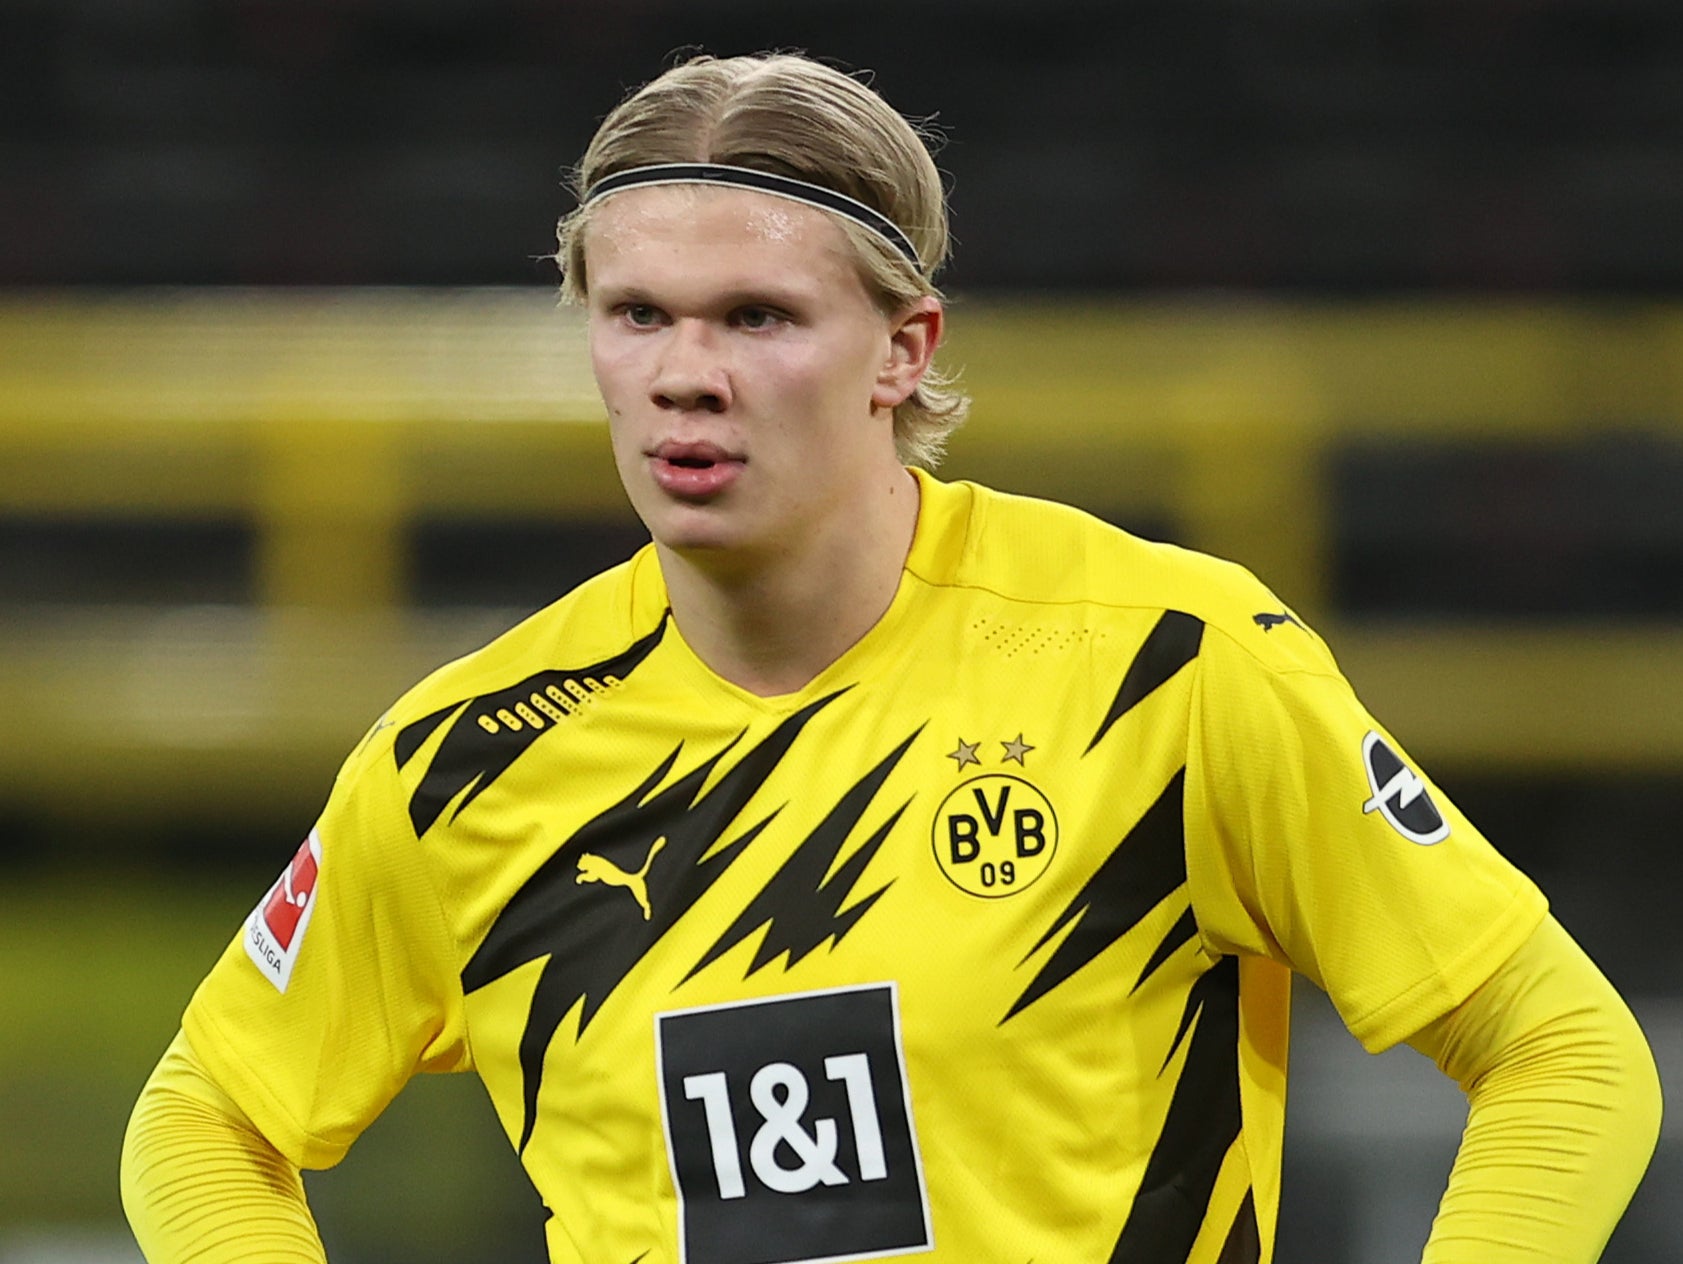 Dortmund striker Erling Haaland